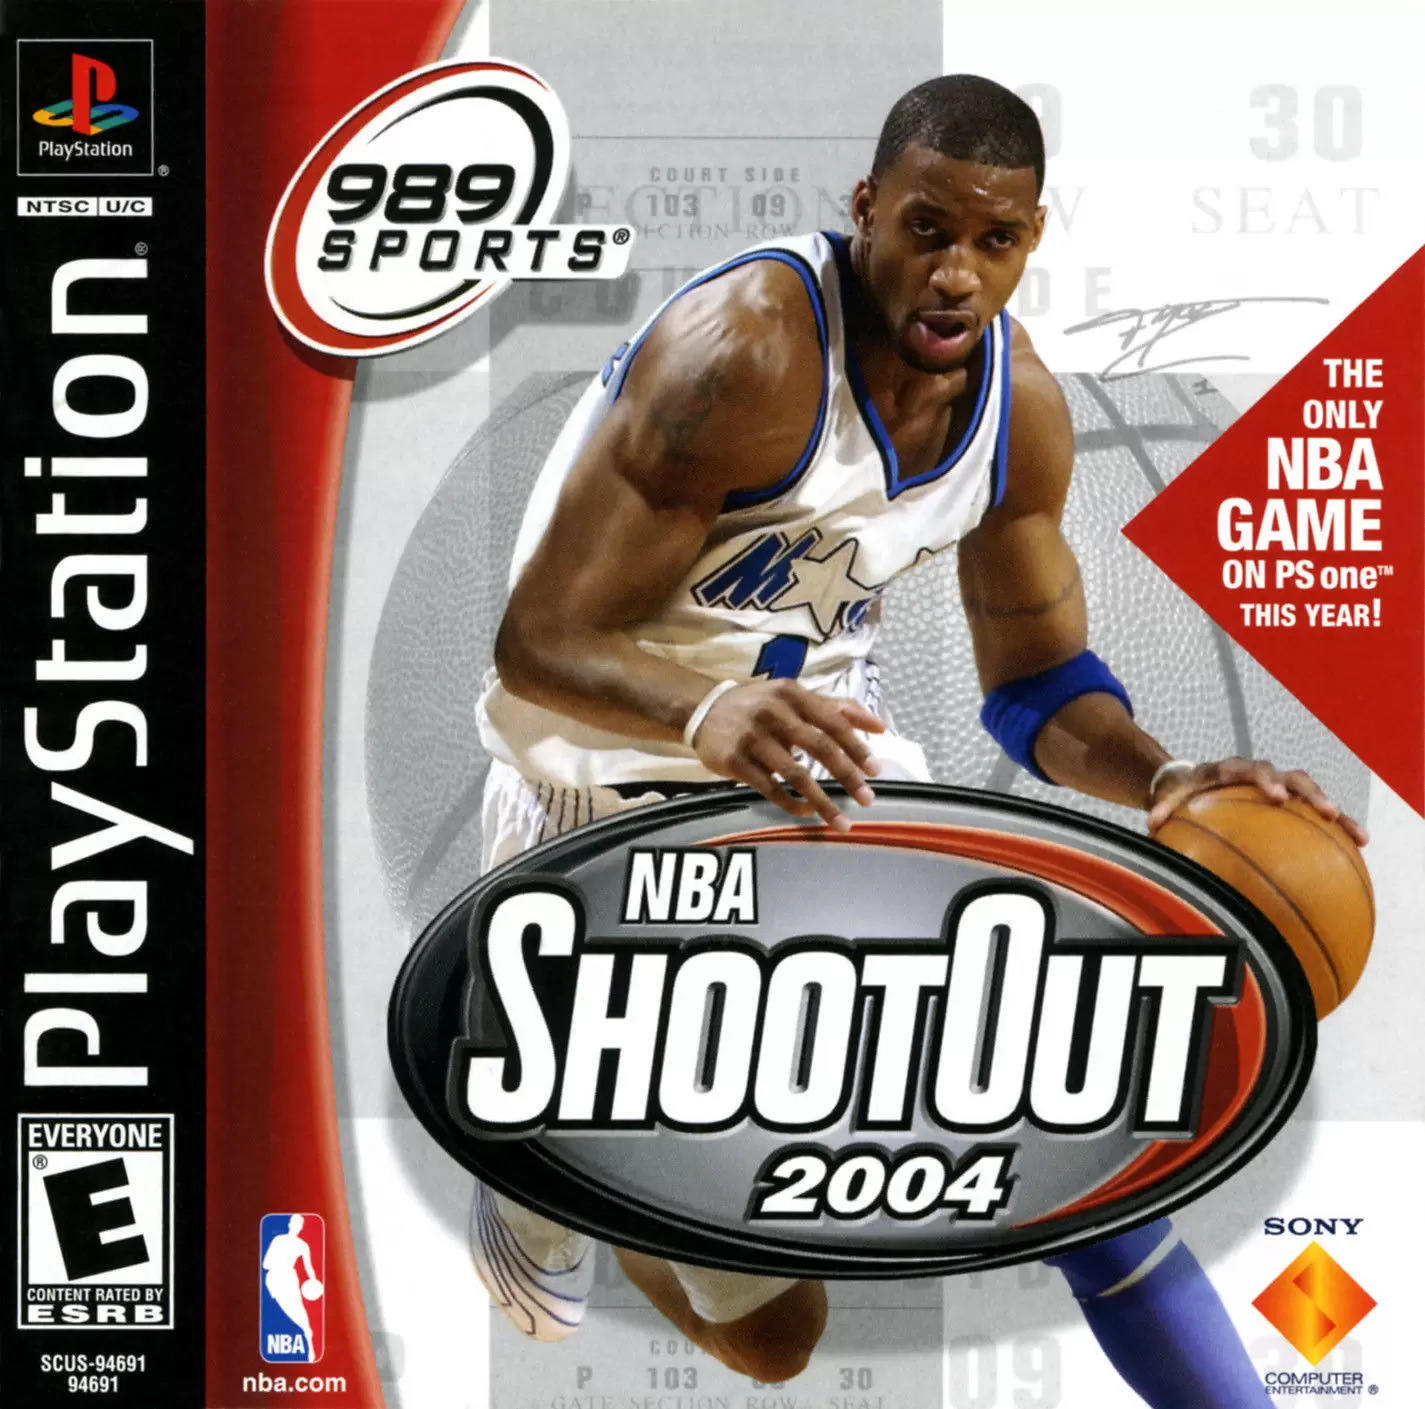 Playstation games - NBA ShootOut 2004